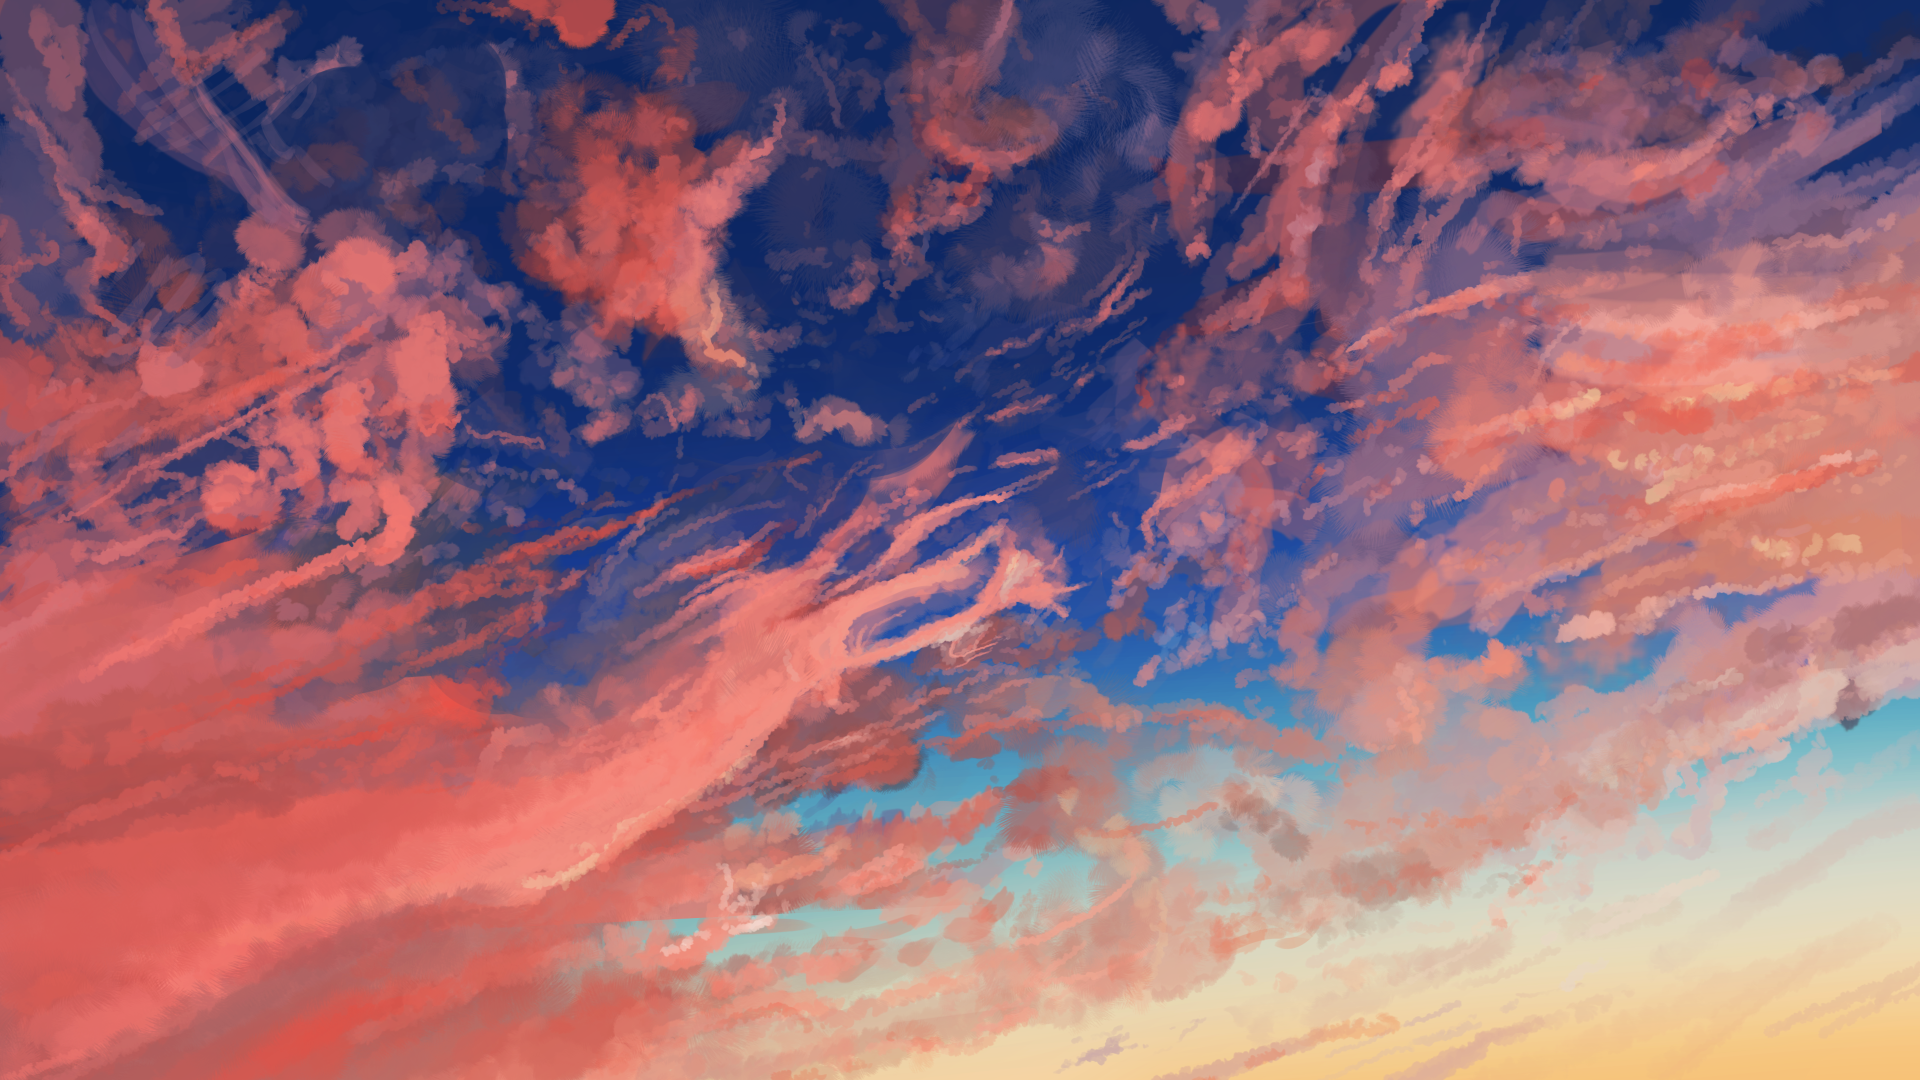 Hình nền anime bầu trời cam chính là lựa chọn hoàn hảo cho những ai yêu thích phong cách anime. Hình ảnh mê hồn của trời và mây kết hợp với những nhân vật đáng yêu sẽ mang đến cho bạn một trải nghiệm tuyệt vời.